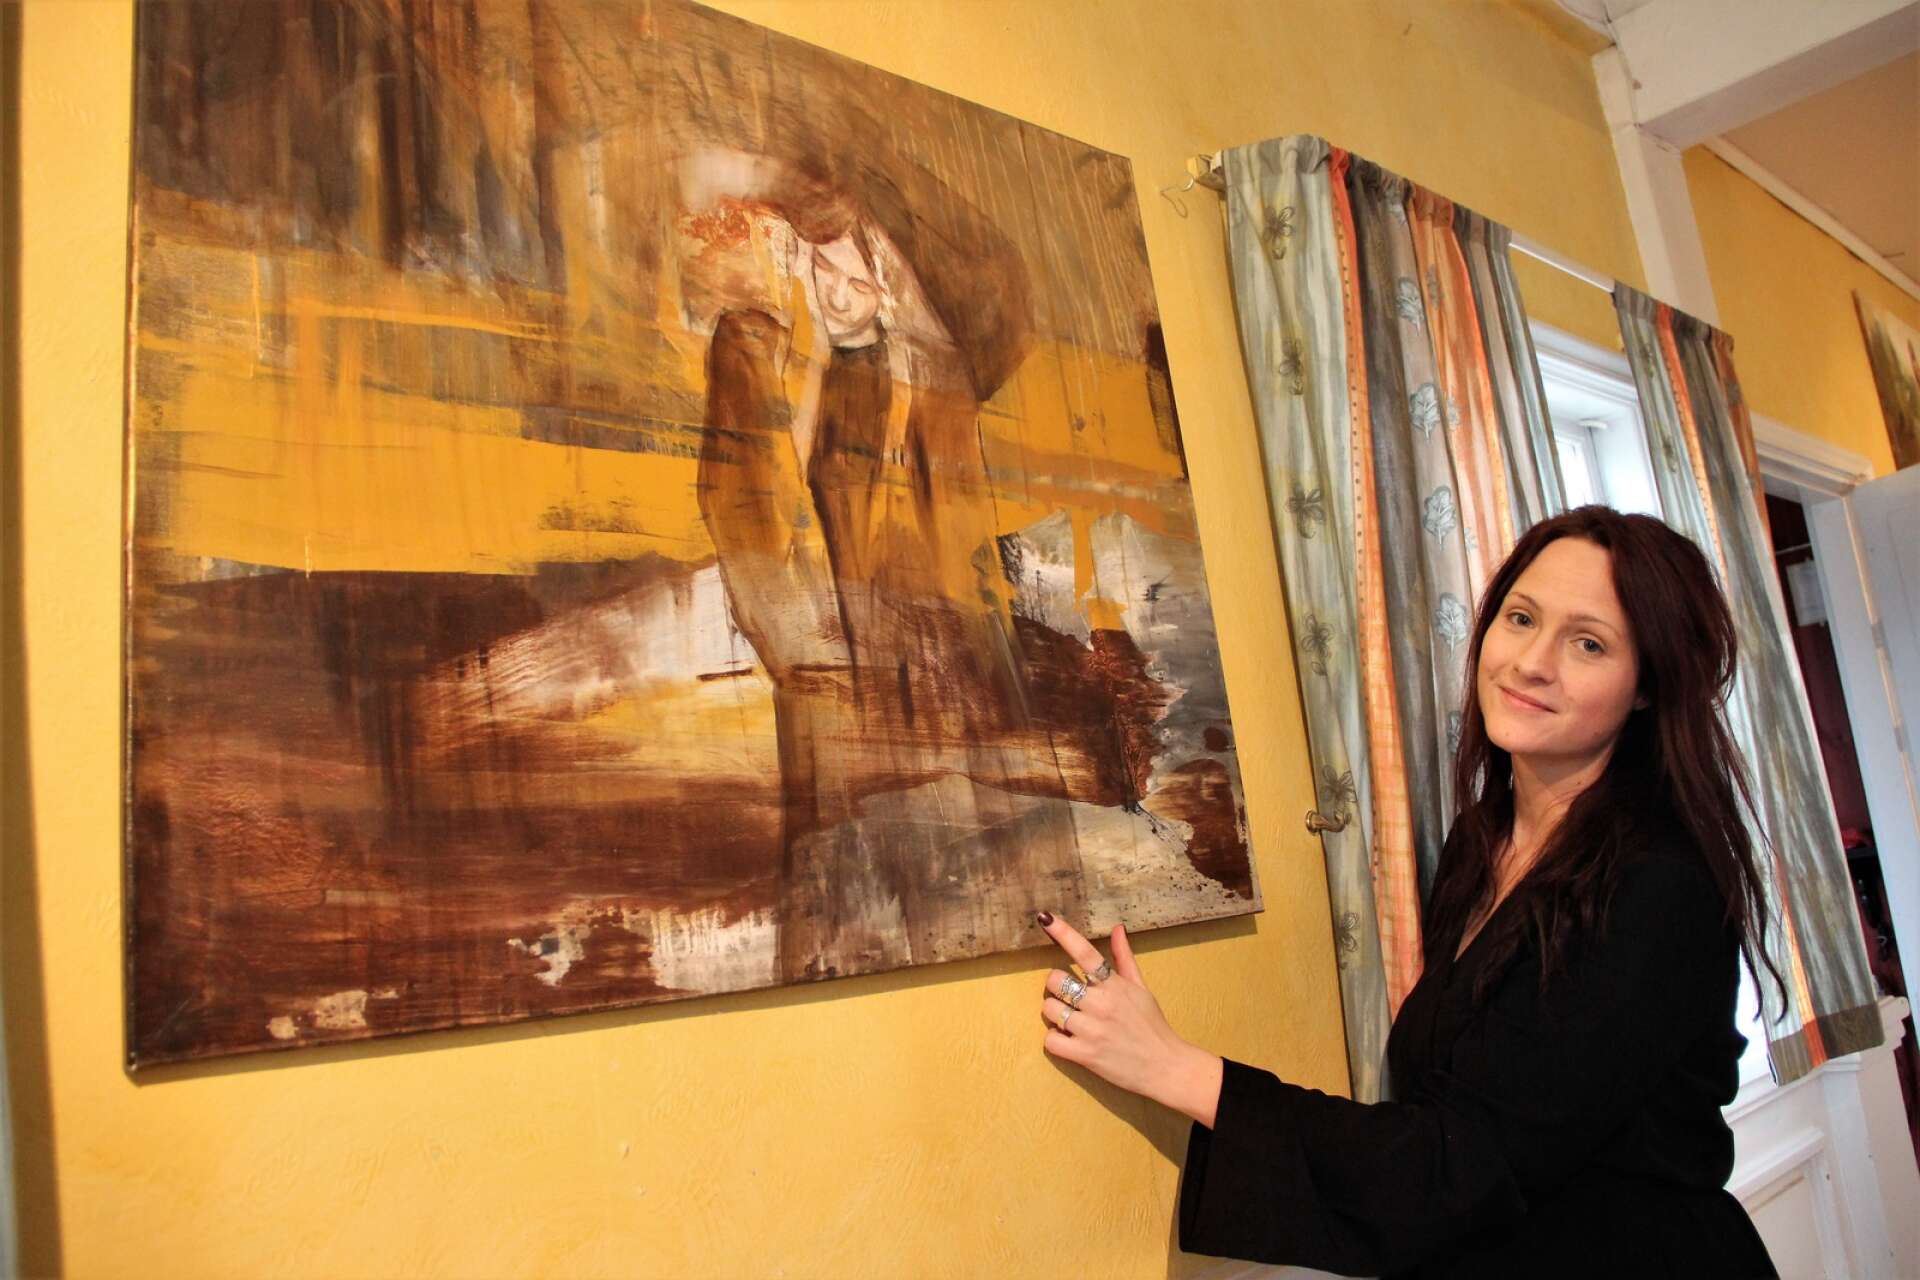 Jennifer Olsson, bildlärare och konstnär har utställning i Bruksgården. Här syns hon vid en av sina oljemålningar, ”Landscape”, där hon gestaltat sig själv - som hon ofta gör.